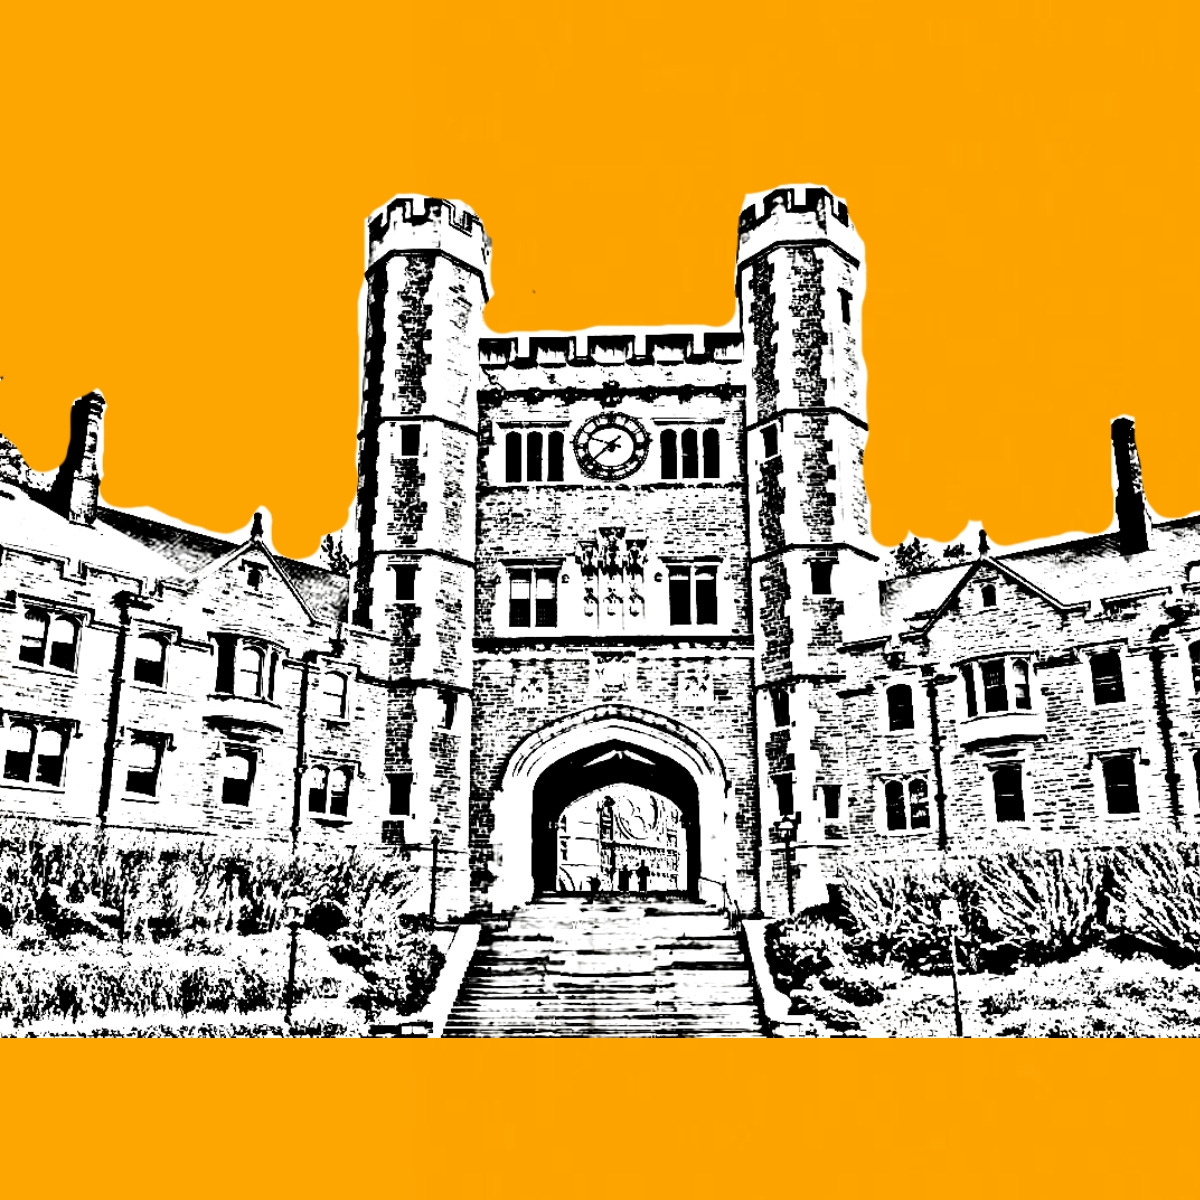 Princeton University’s Blair Hall.